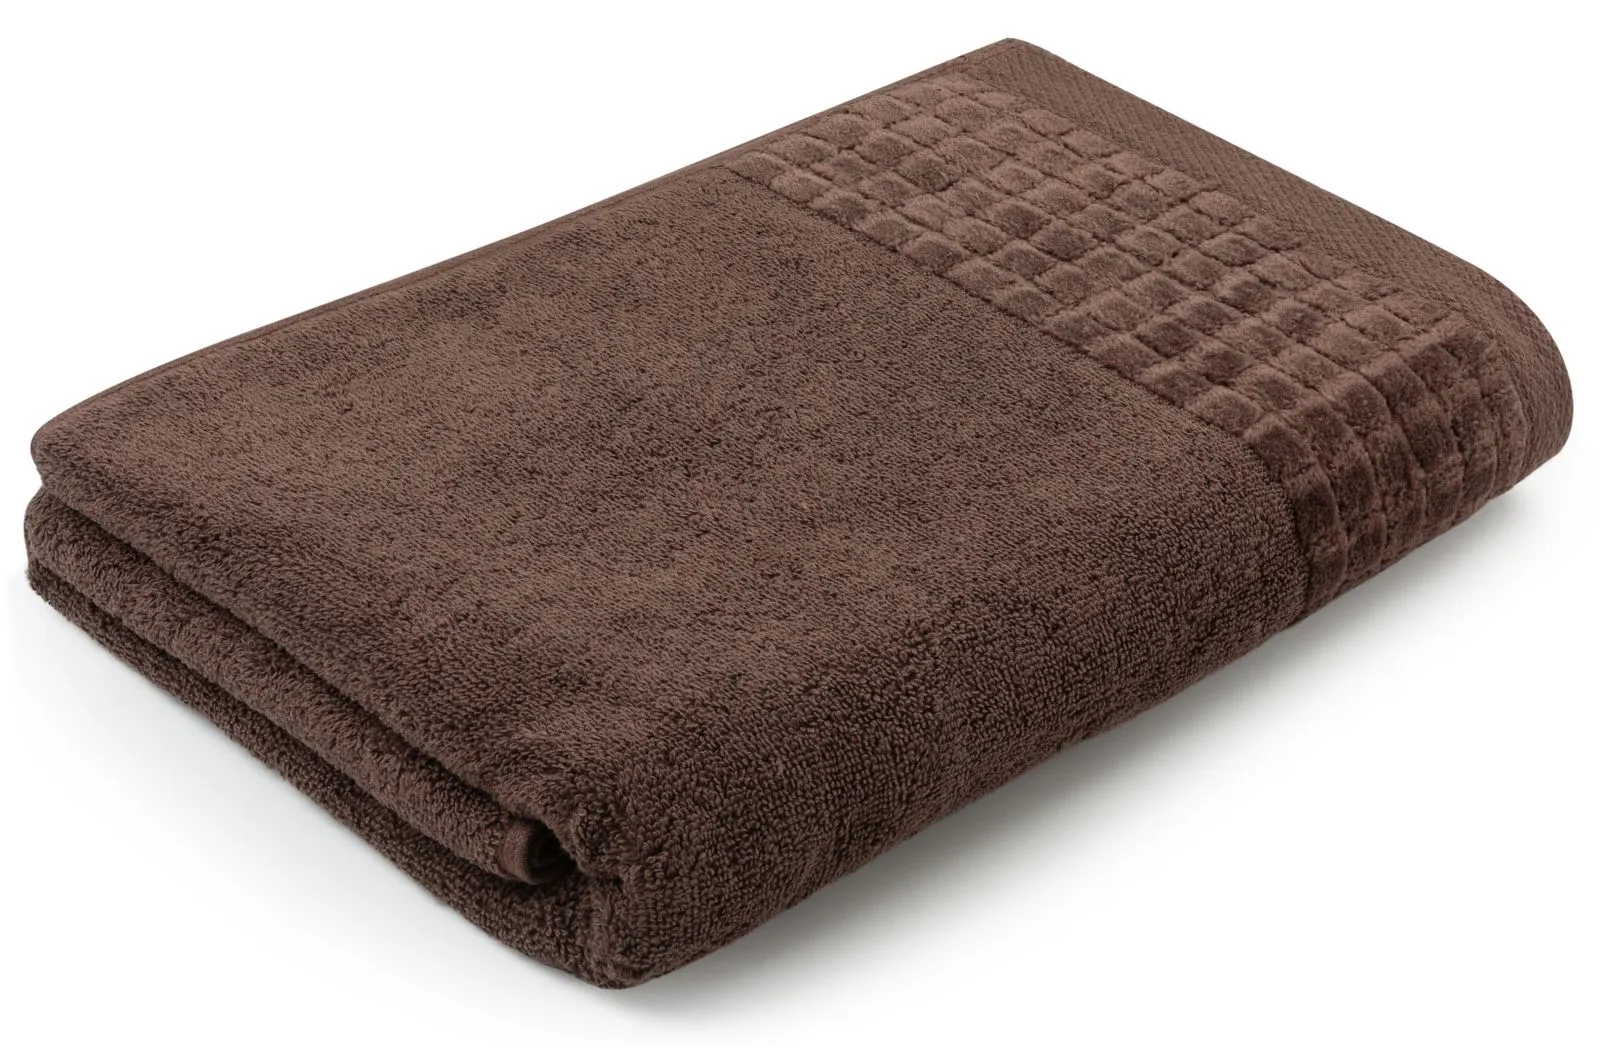 Gruby i miękki ręcznik kąpielowy 140×70 cm Larissa gorzka czekolada 500 g/m²